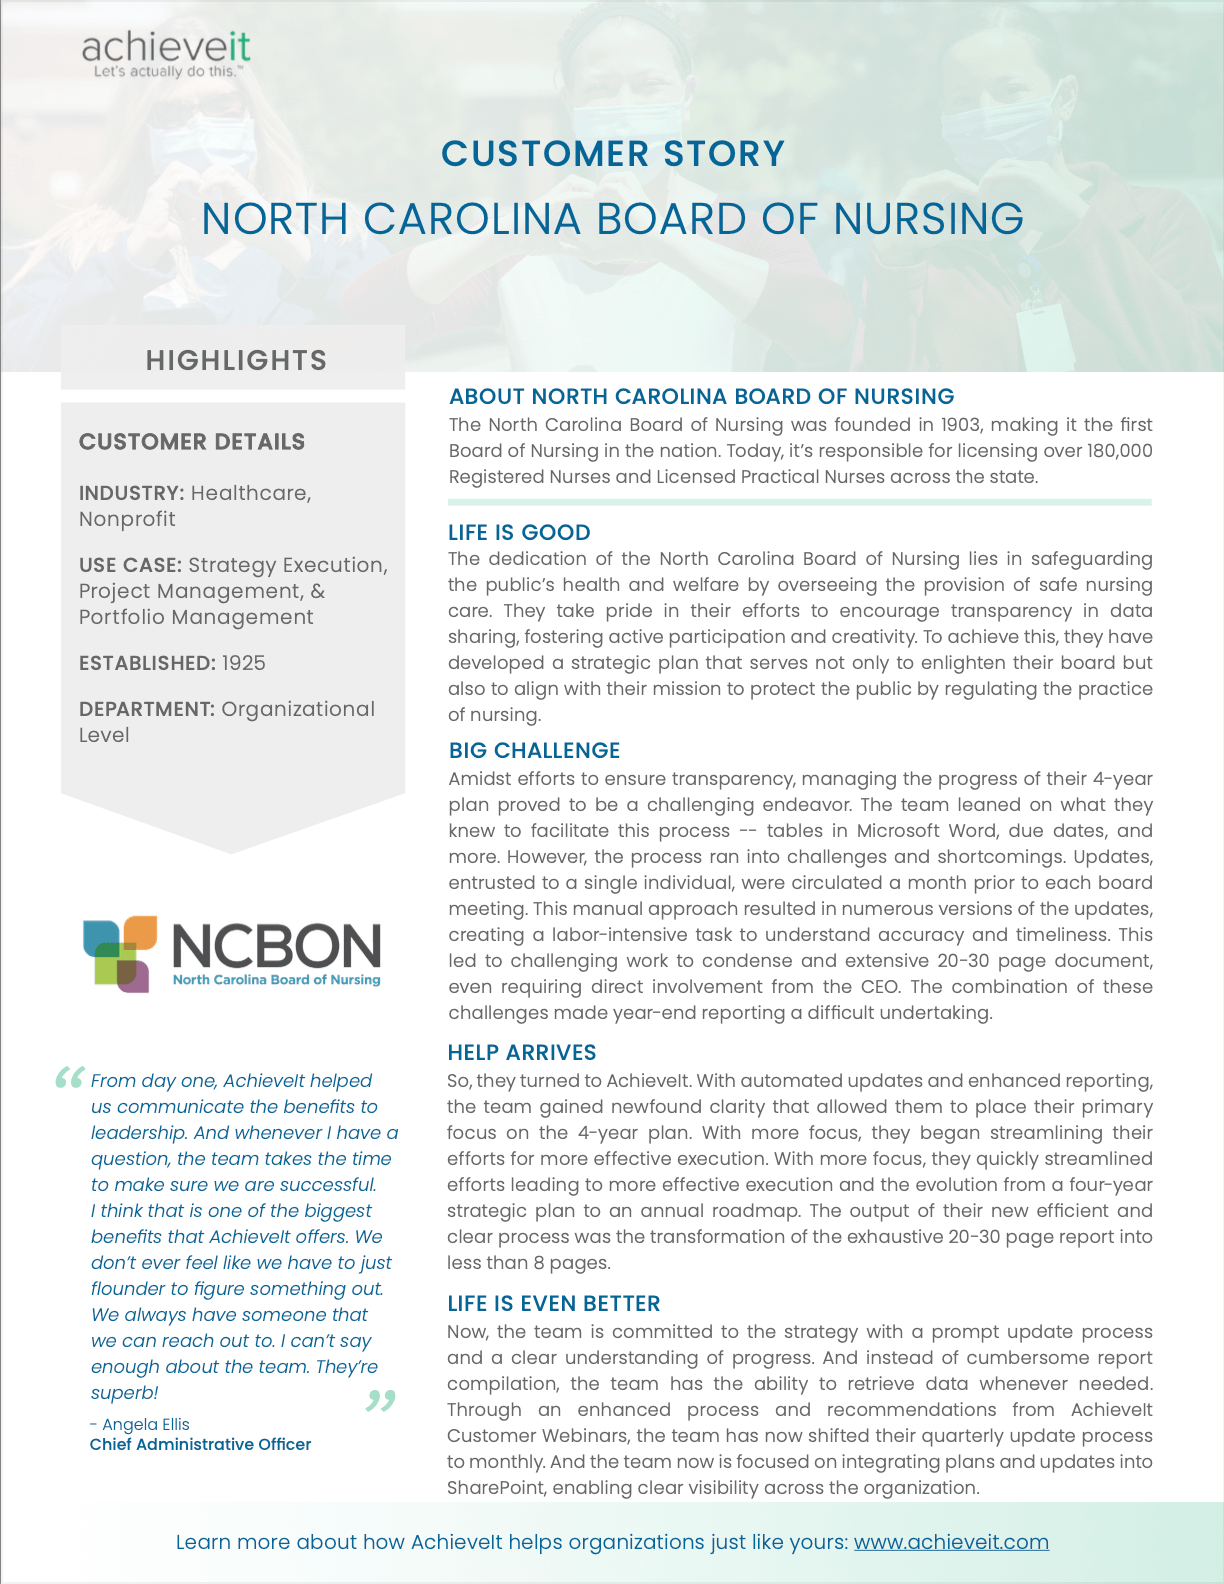 North Carolina Board of Nursing Customer Story